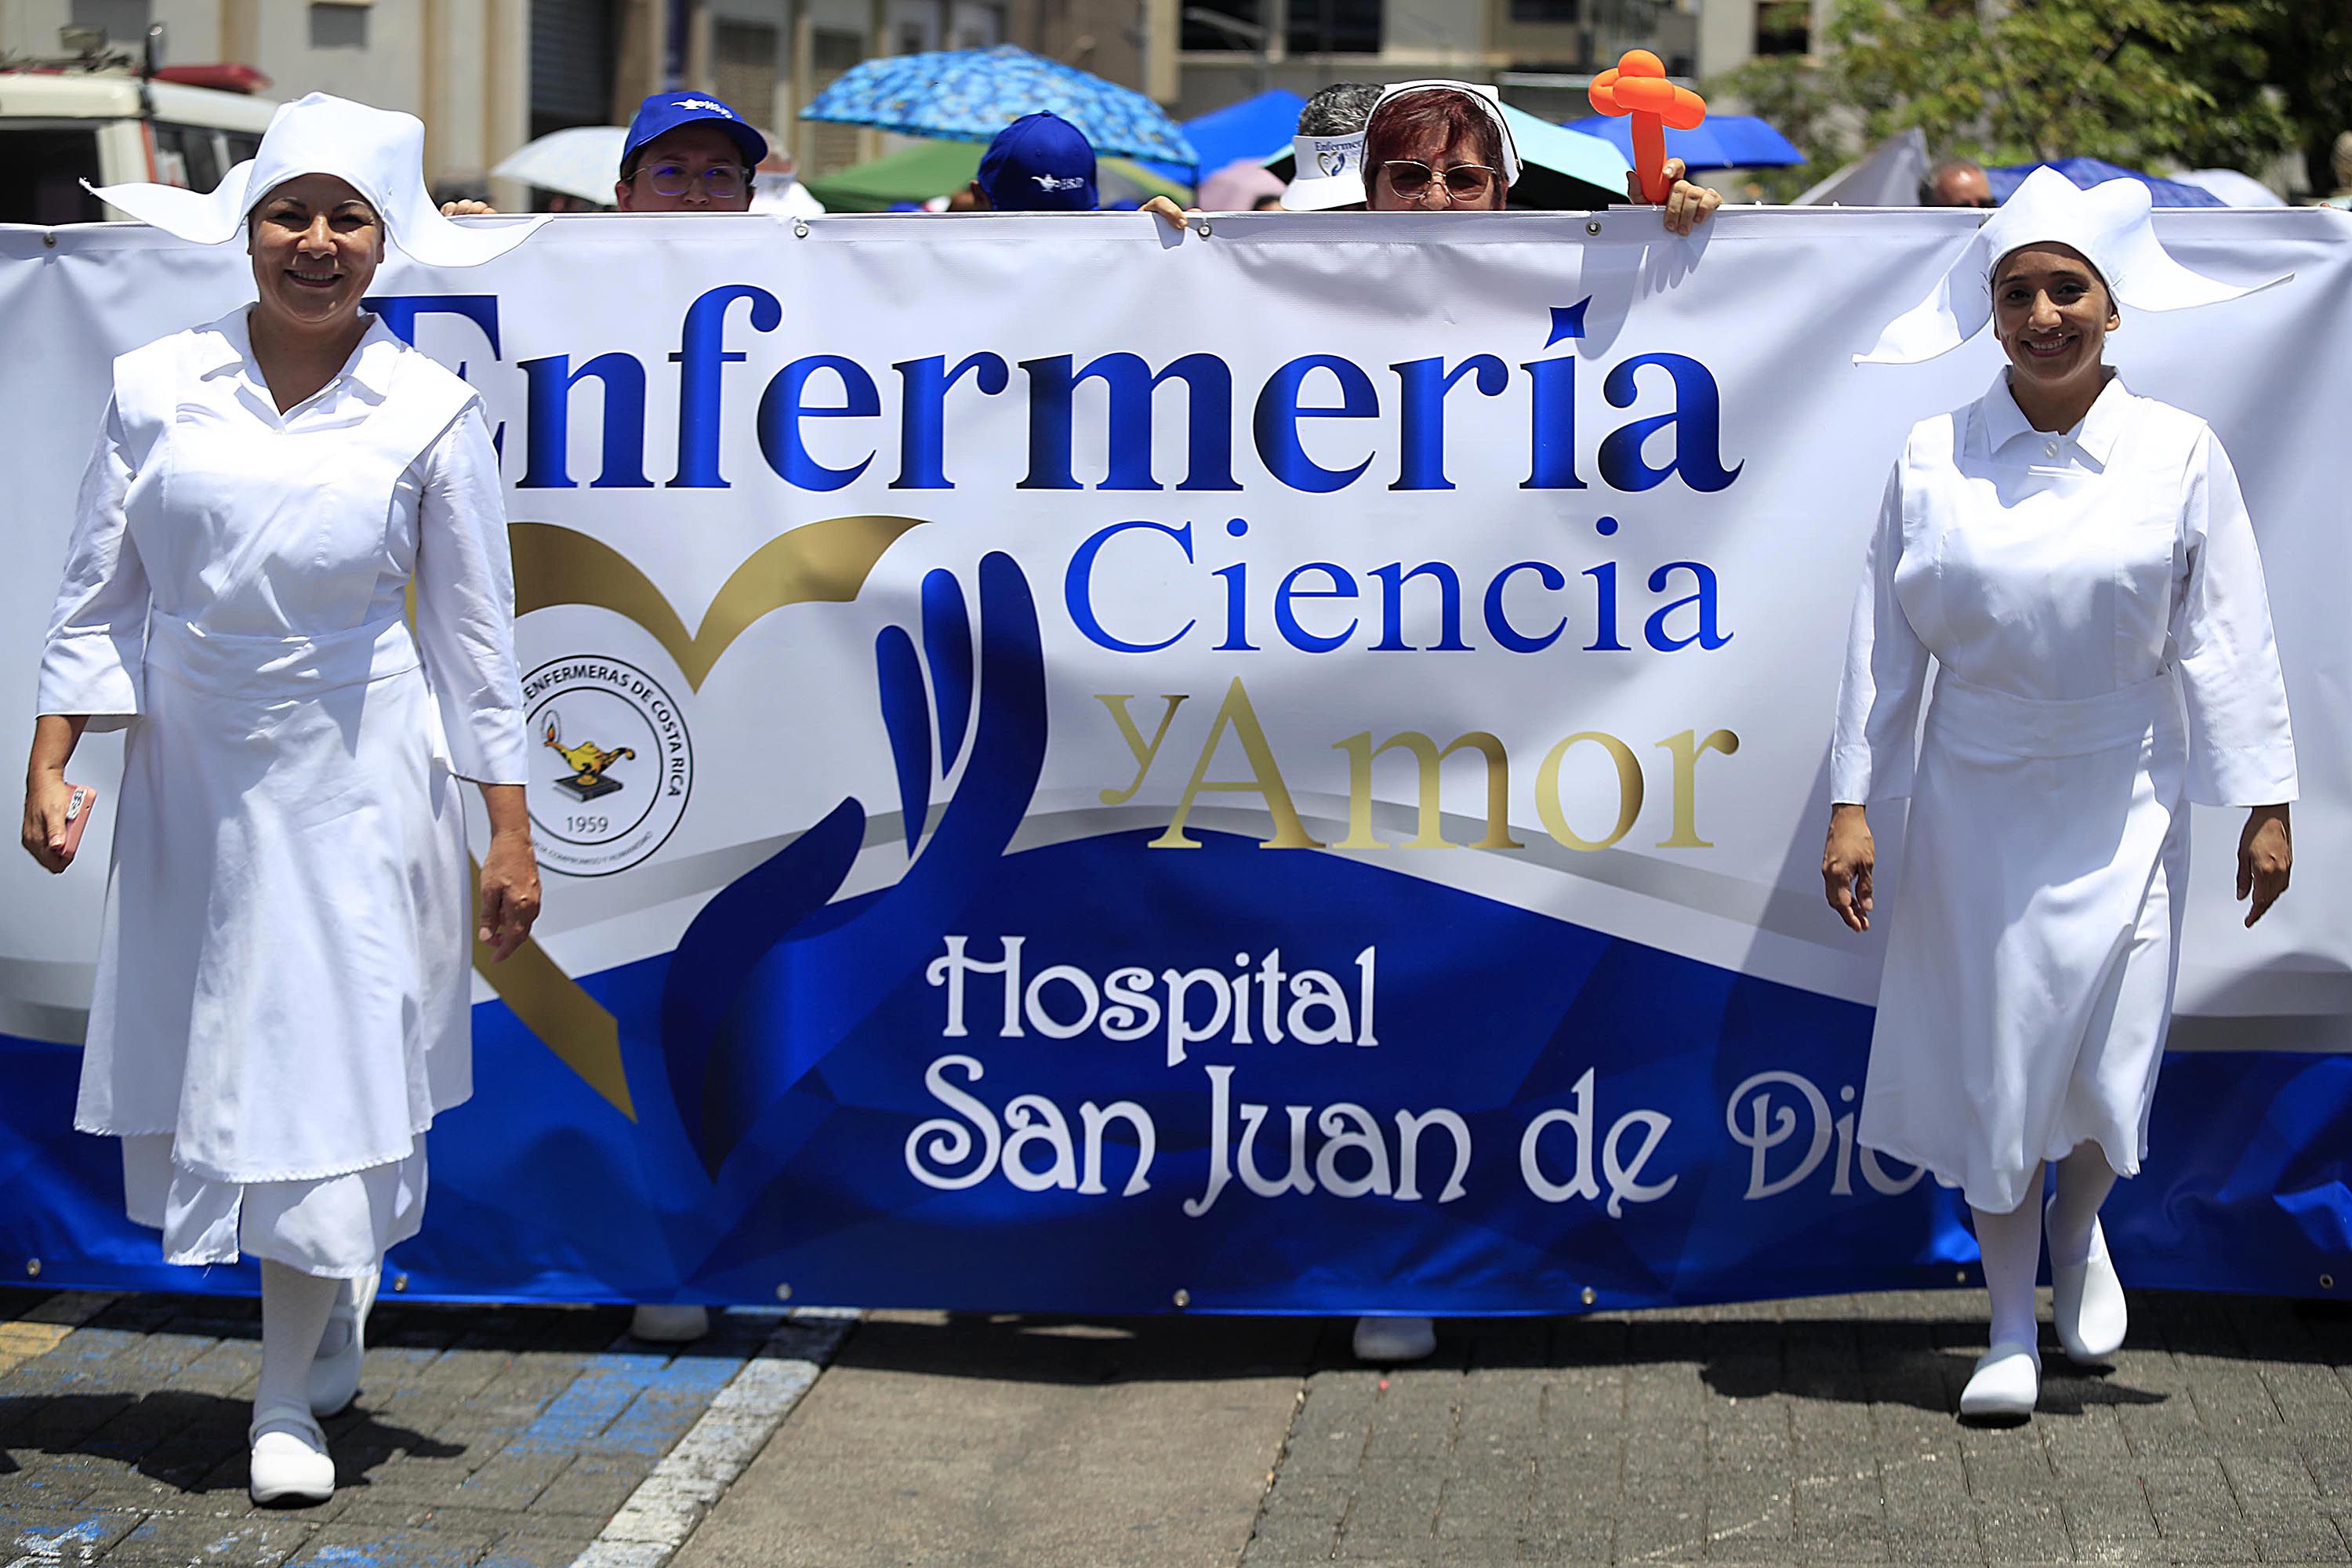 Vistiendo el traje de enfermera que se utilizó hace más de un siglo, personal del Hospital San Juan de Dios participó en la caminata, este 12 de mayo. Foto: